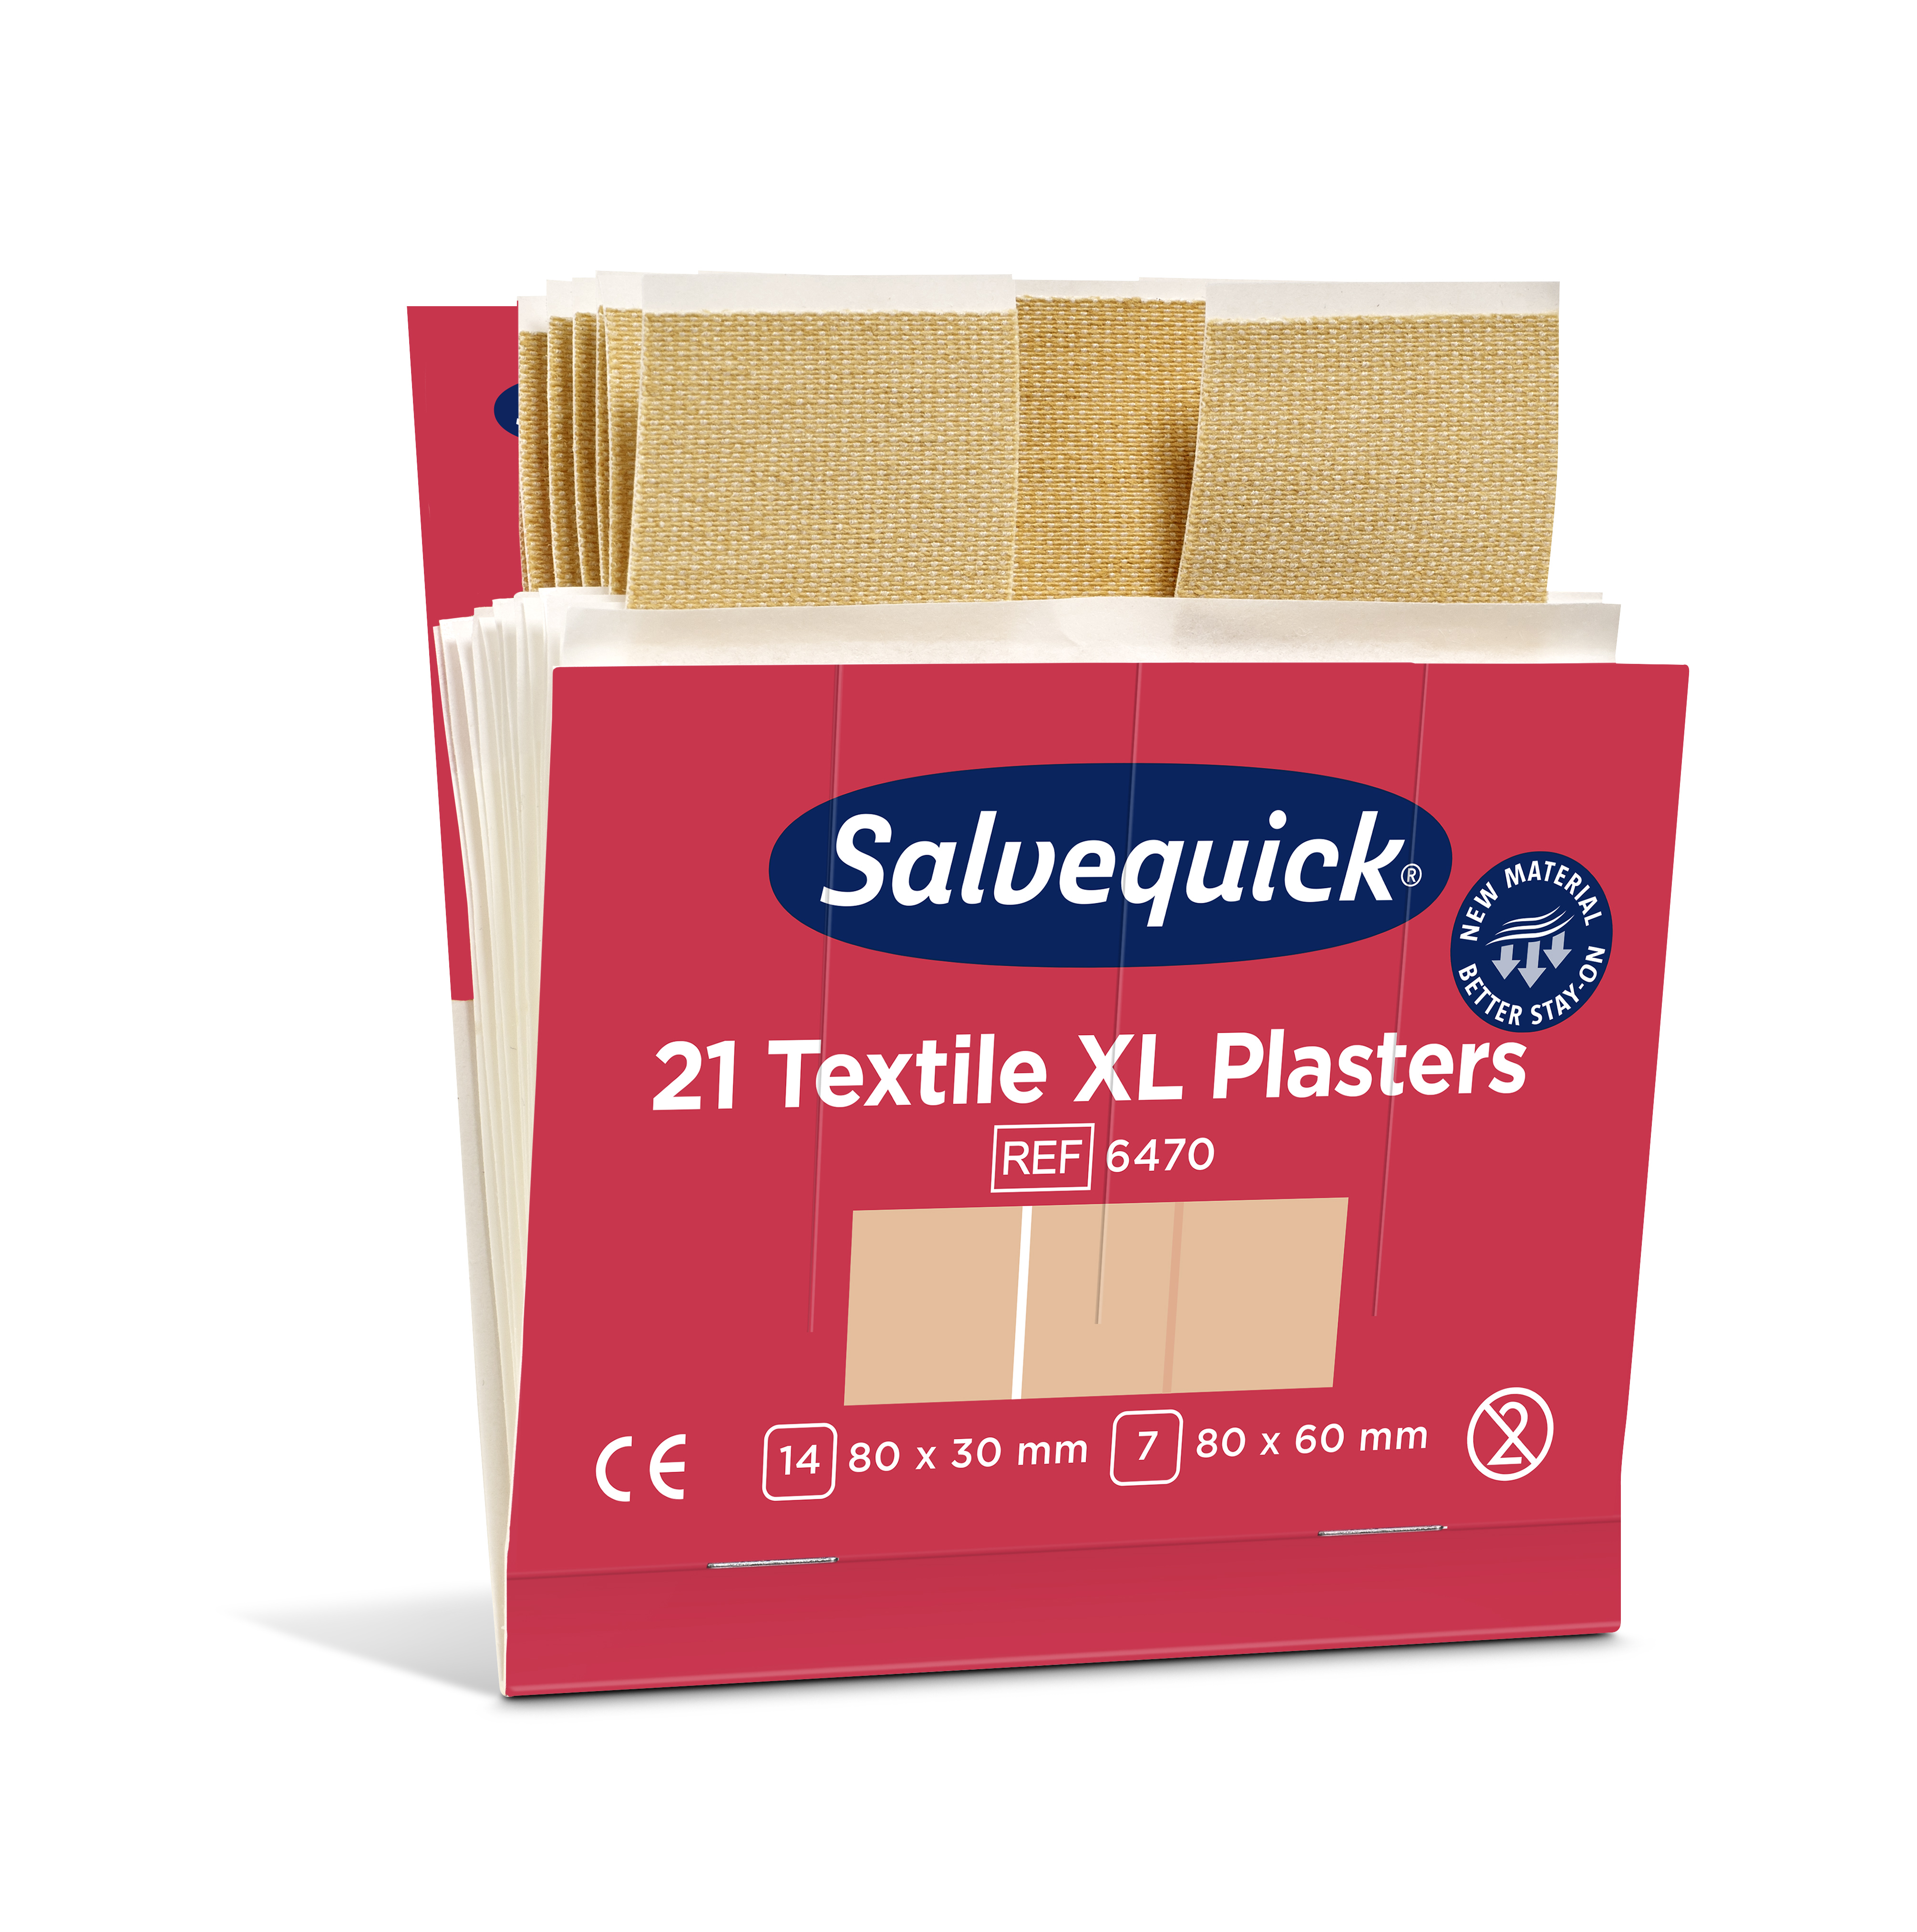 CEDERROTH Salvequick Textilpflaster XL - Packung à 6 x 21 Stück